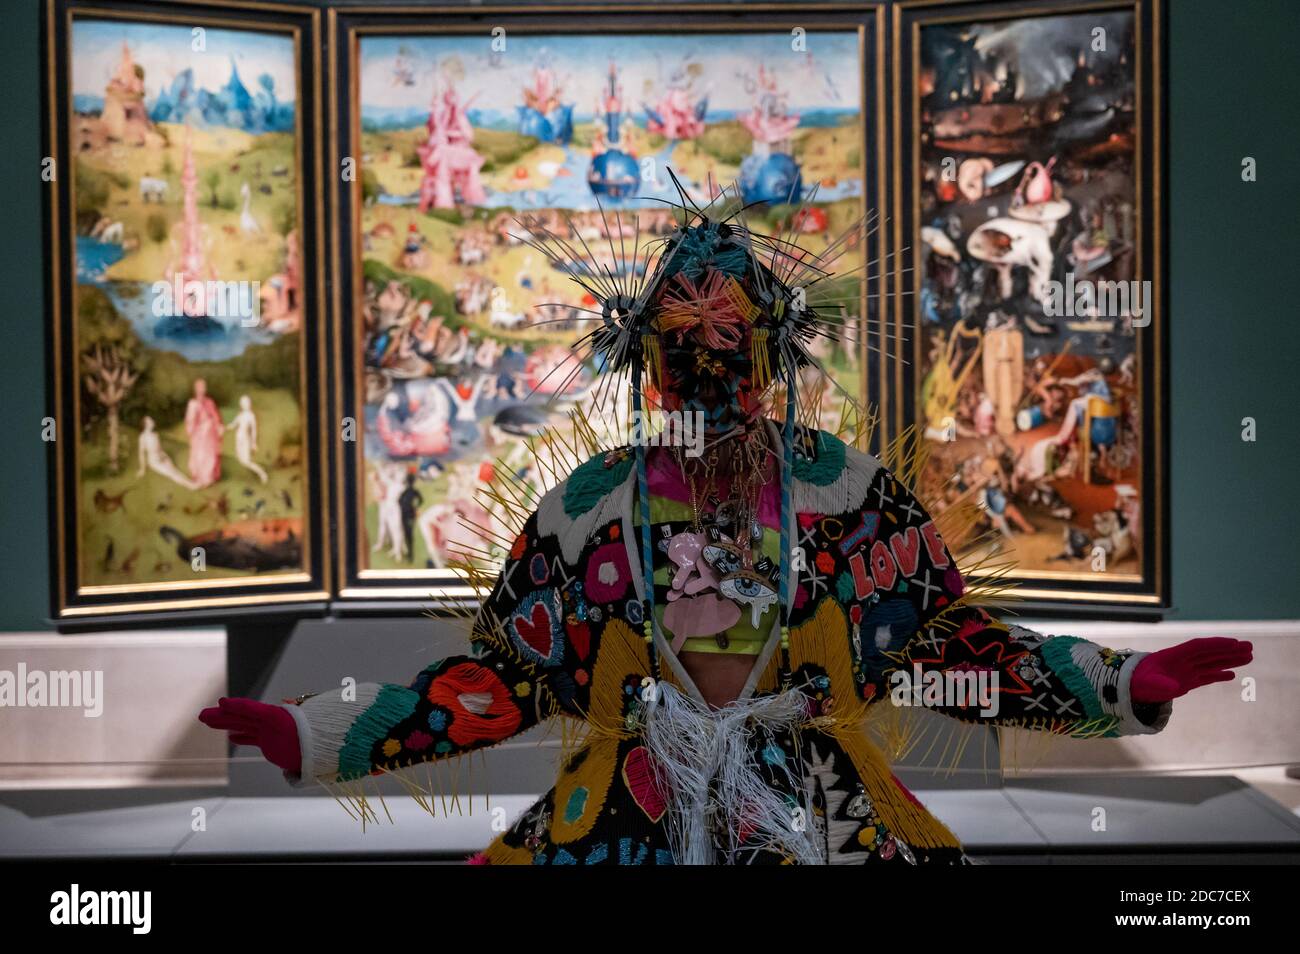 Madrid, Spagna. 19 Nov 2020. L'artista Blanca li balla in una sala con El Bosco (Hieronymus Bosch) che dipinge il Giardino delle delizie terrene, nell'ambito di una rappresentazione per il 201° anniversario del Museo del Prado. Credit: Marcos del Mazo/Alamy Live News Foto Stock